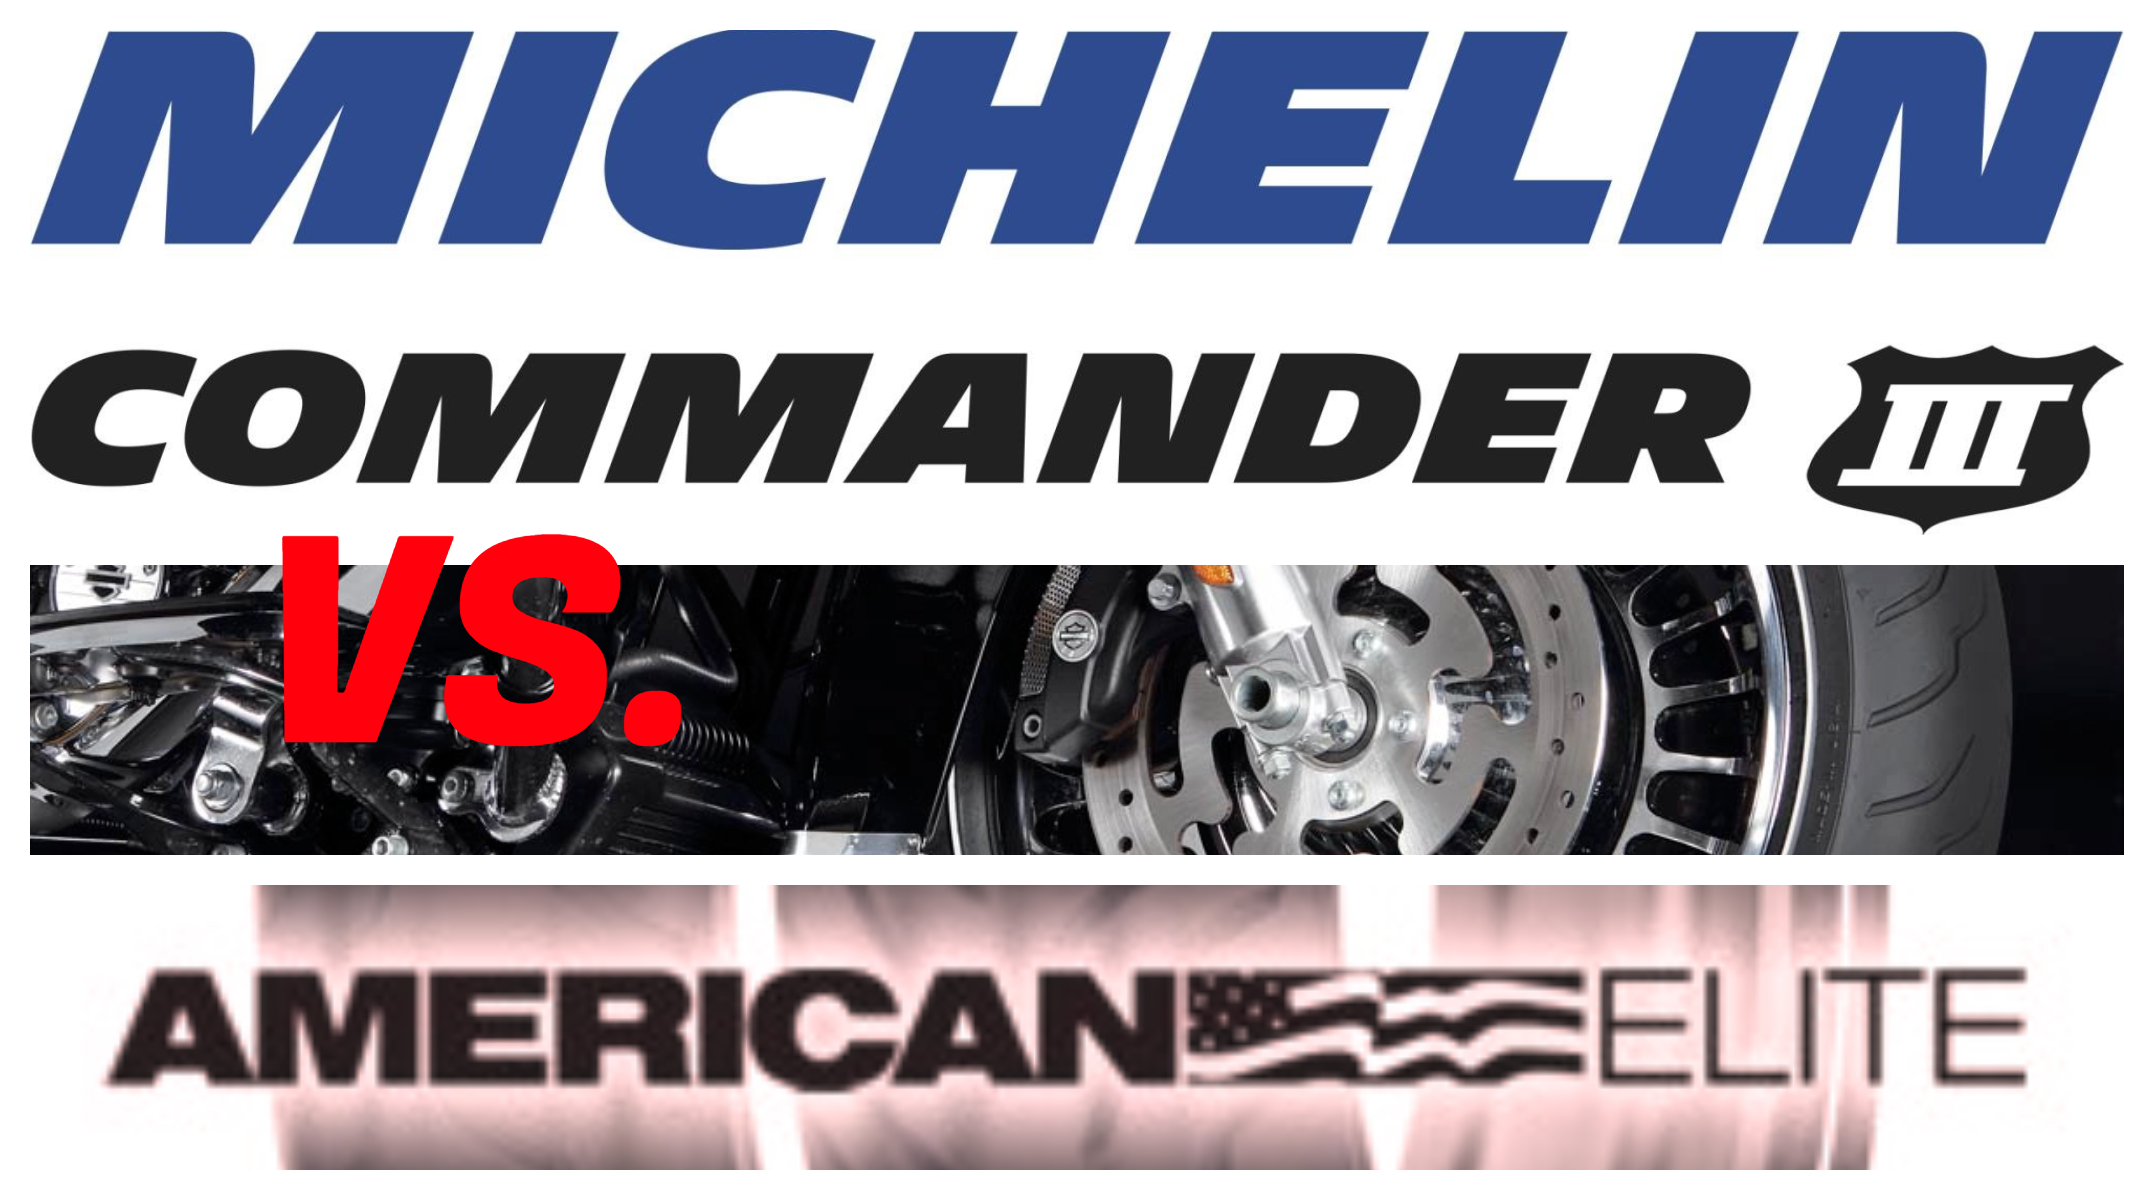 Michelin Commander 3 a Dunlop American Elite – velké srovnání motocyklových pneu